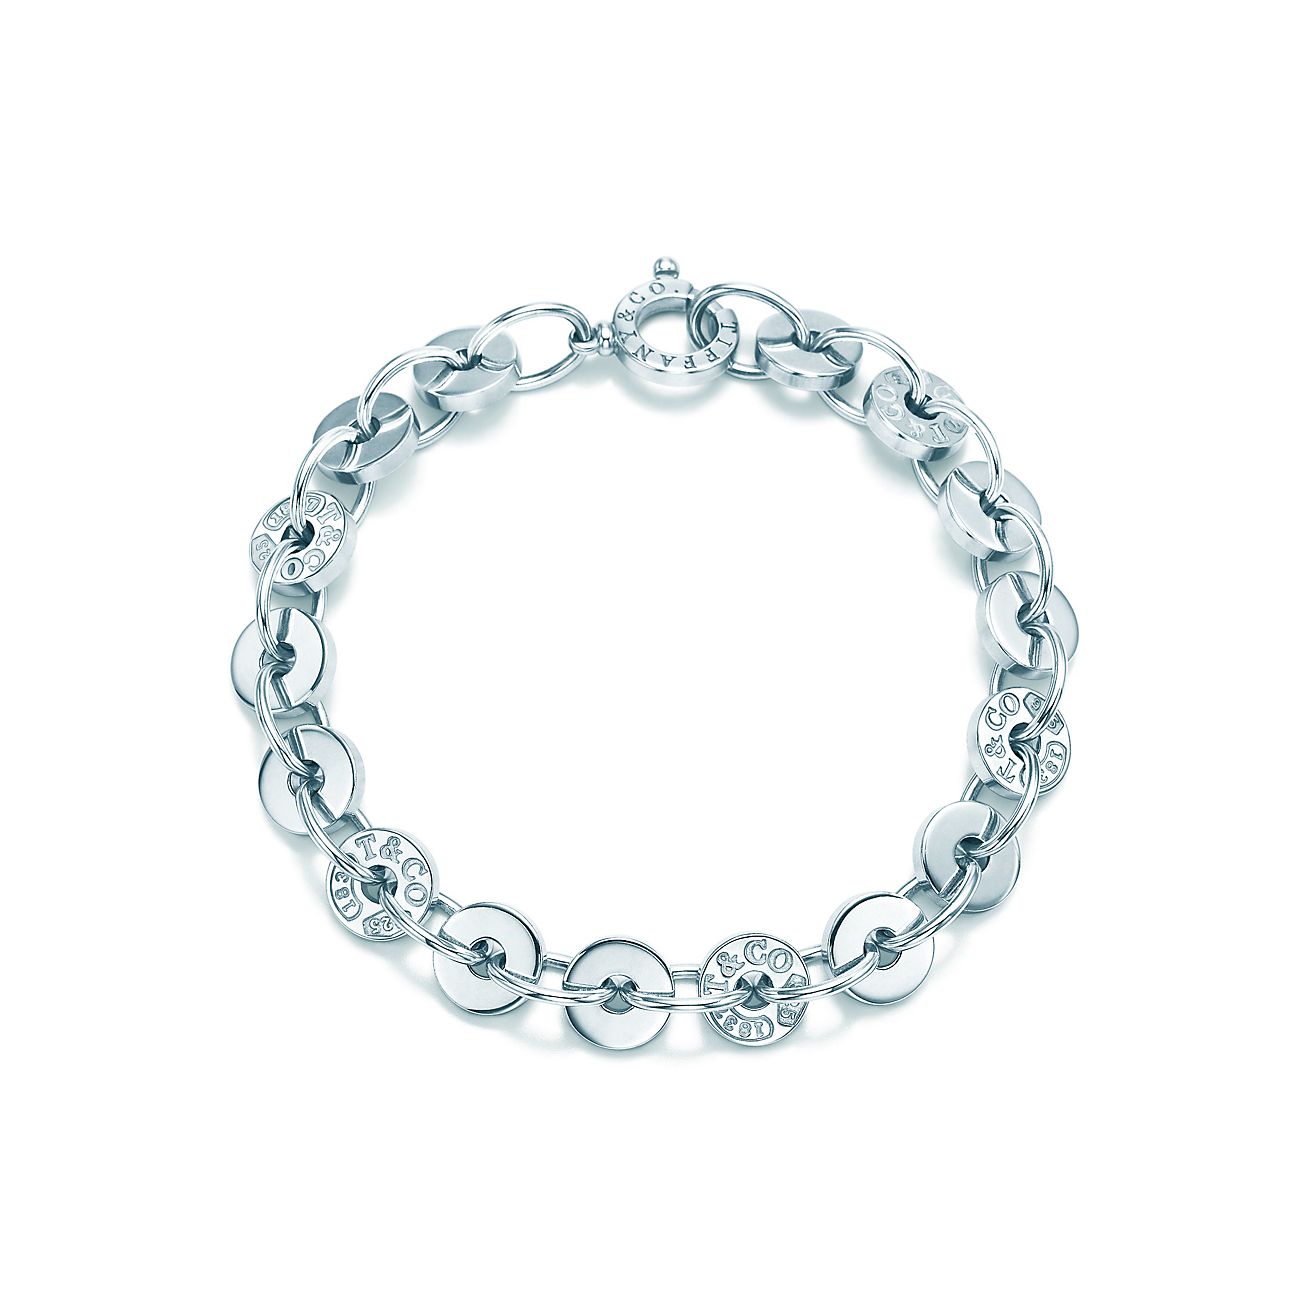 Tiffany 1837™ circle bracelet in 